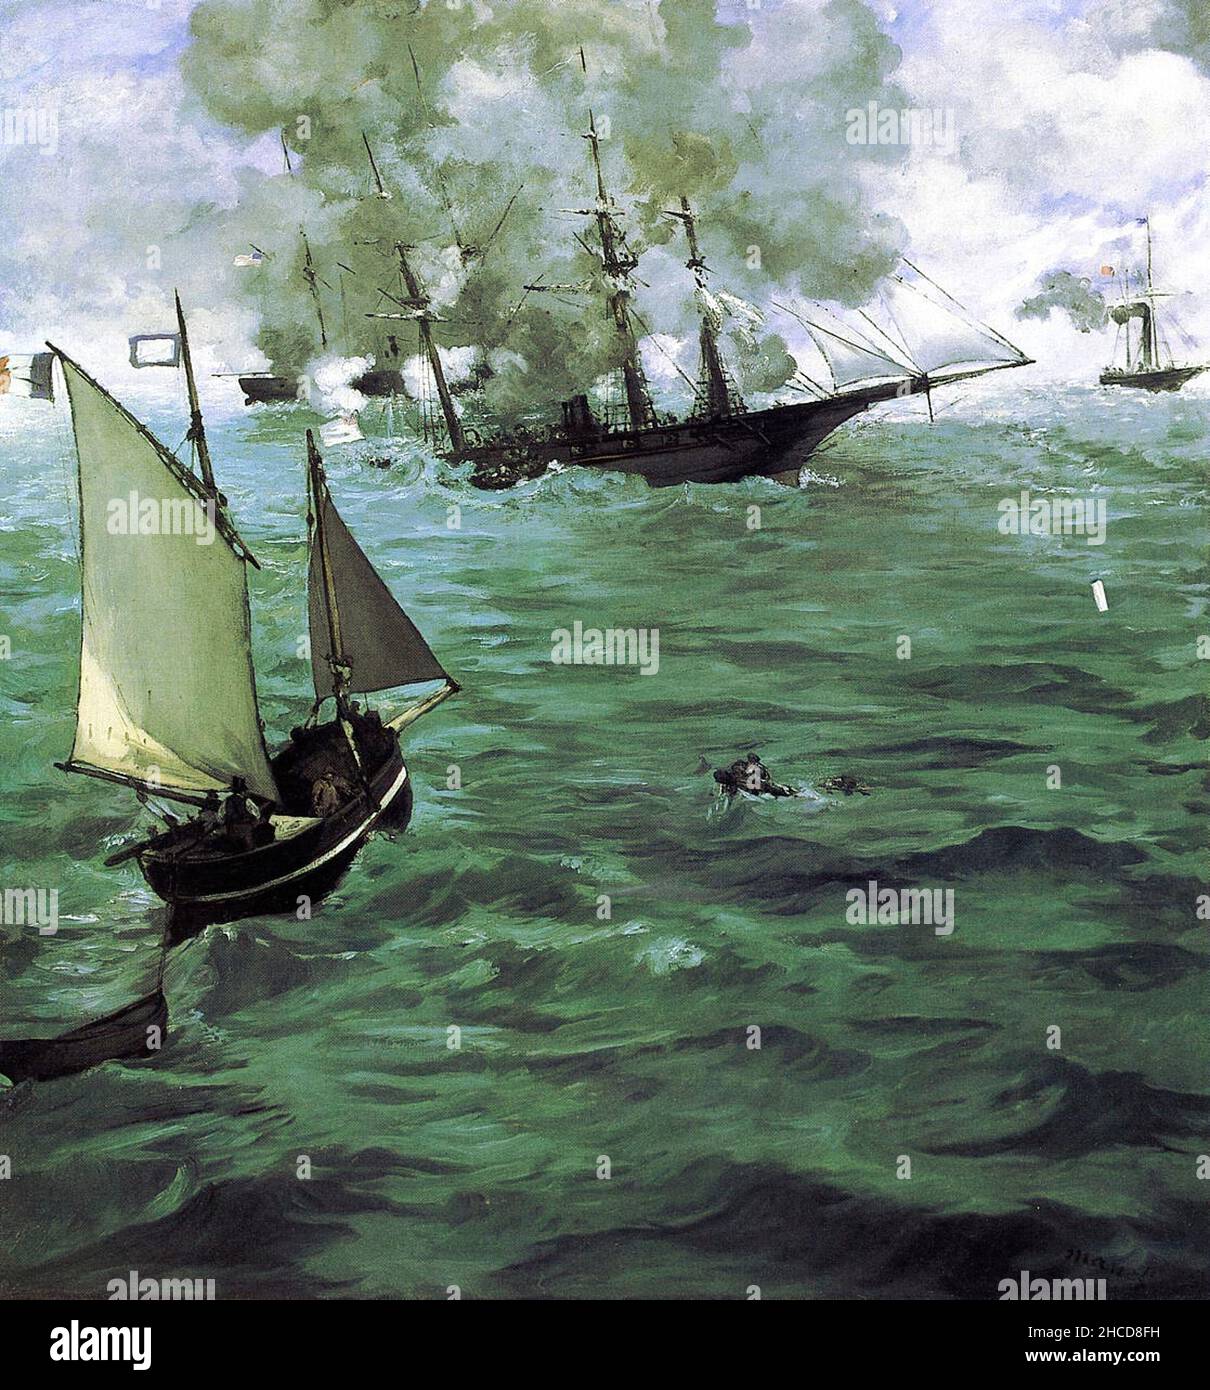 Die Schlacht von Kearsarge und Alabama von Edouard Manet.das Gemälde zeigt die Schlacht von Cherbourg von 1864, eine Schlacht während des amerikanischen Bürgerkrieges zwischen dem Union-Kreuzer USS Kearsarge und dem konföderierten Raider CSS Alabama. Stockfoto